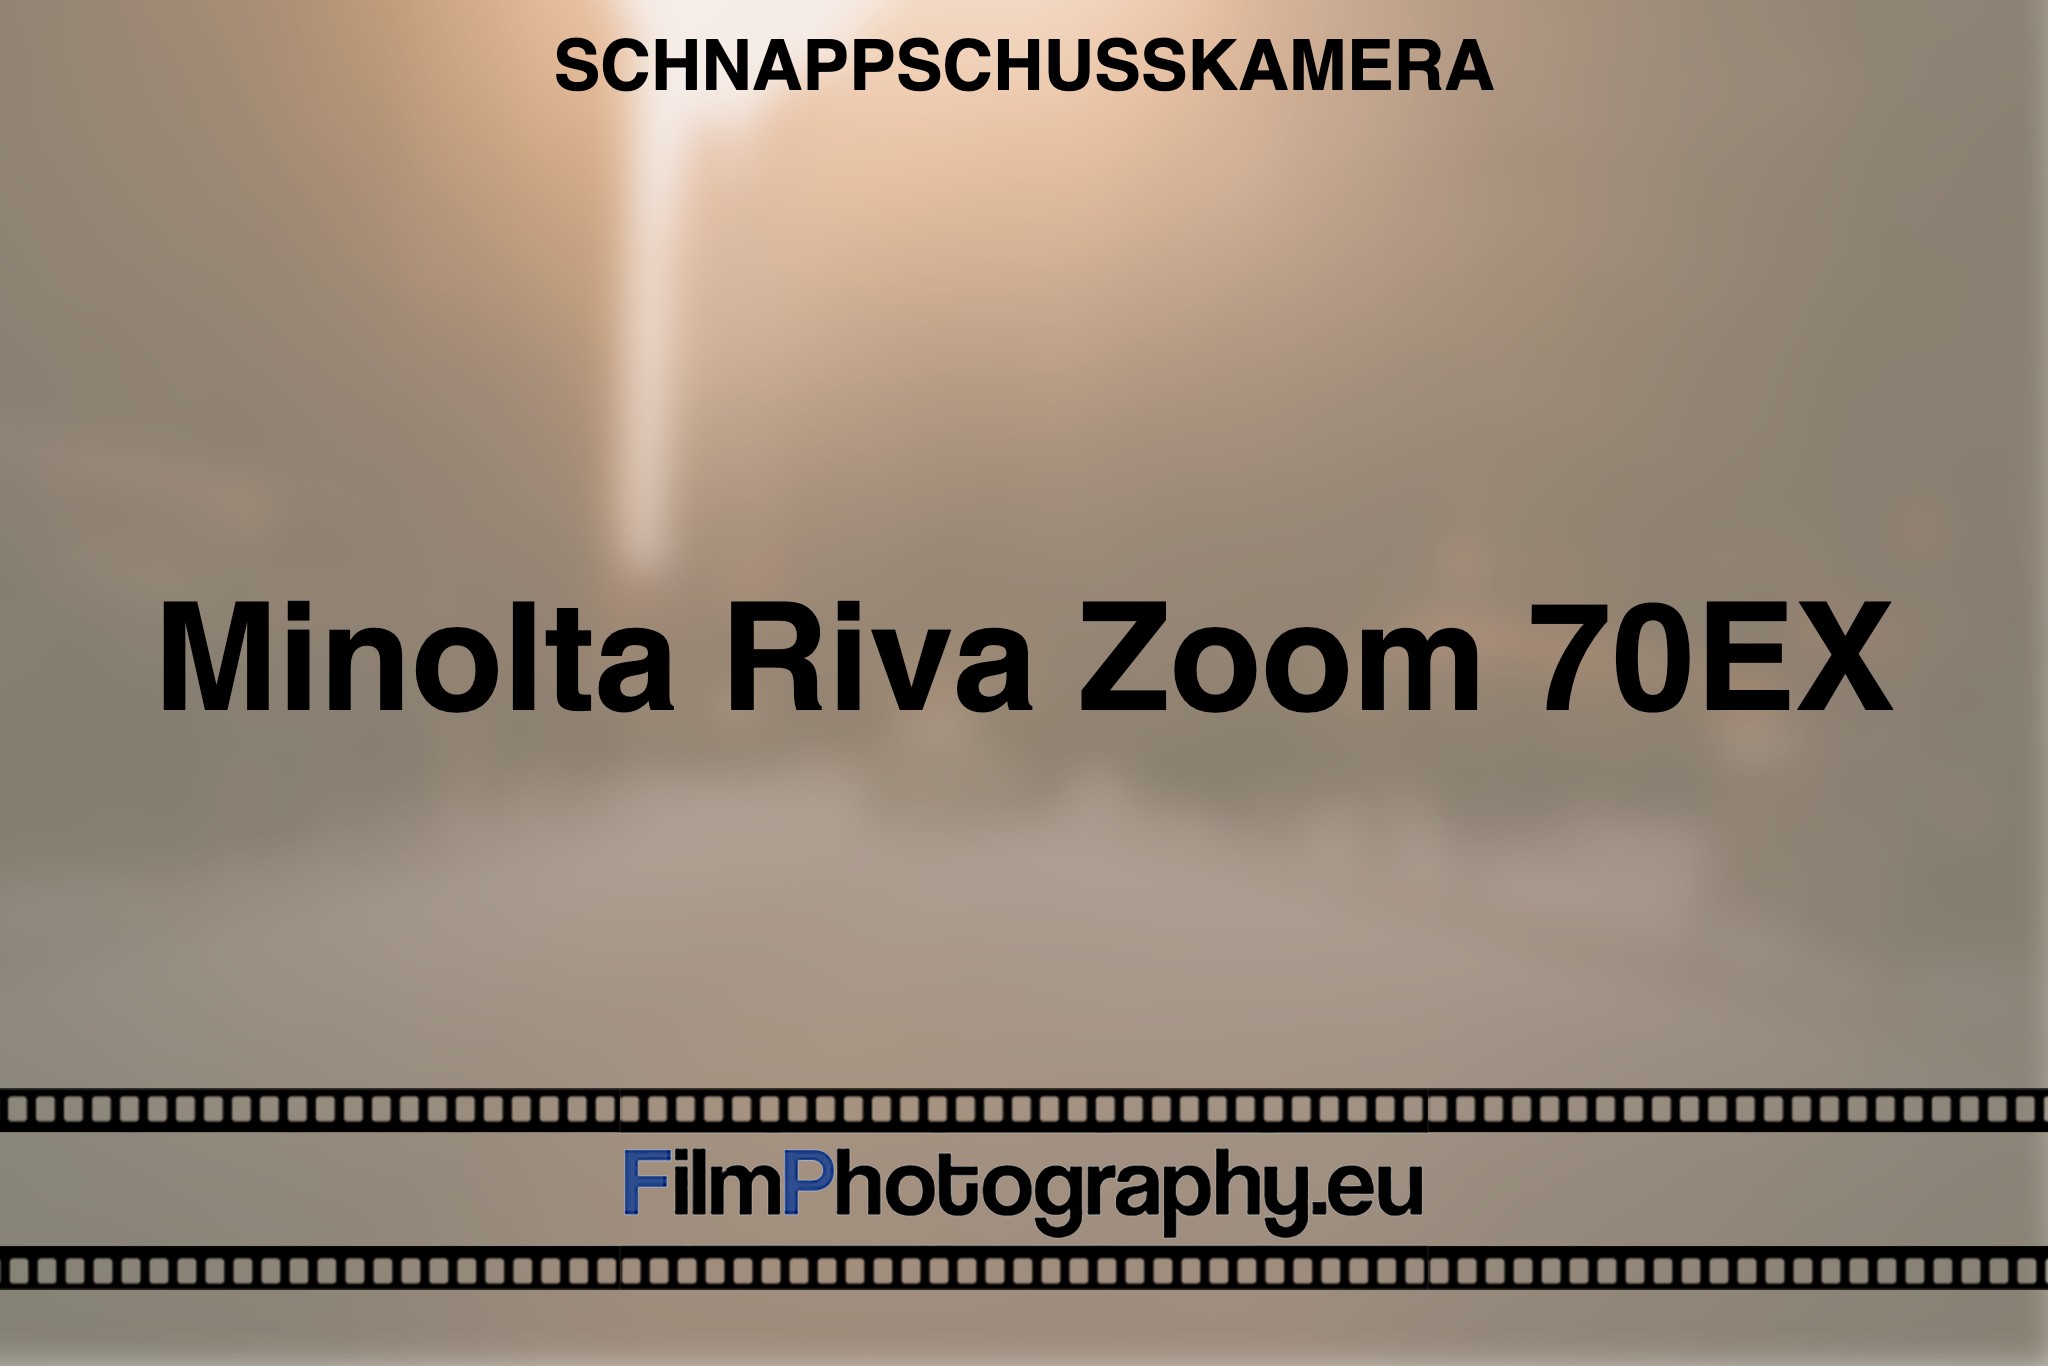 minolta-riva-zoom-70ex-schnappschusskamera-bnv